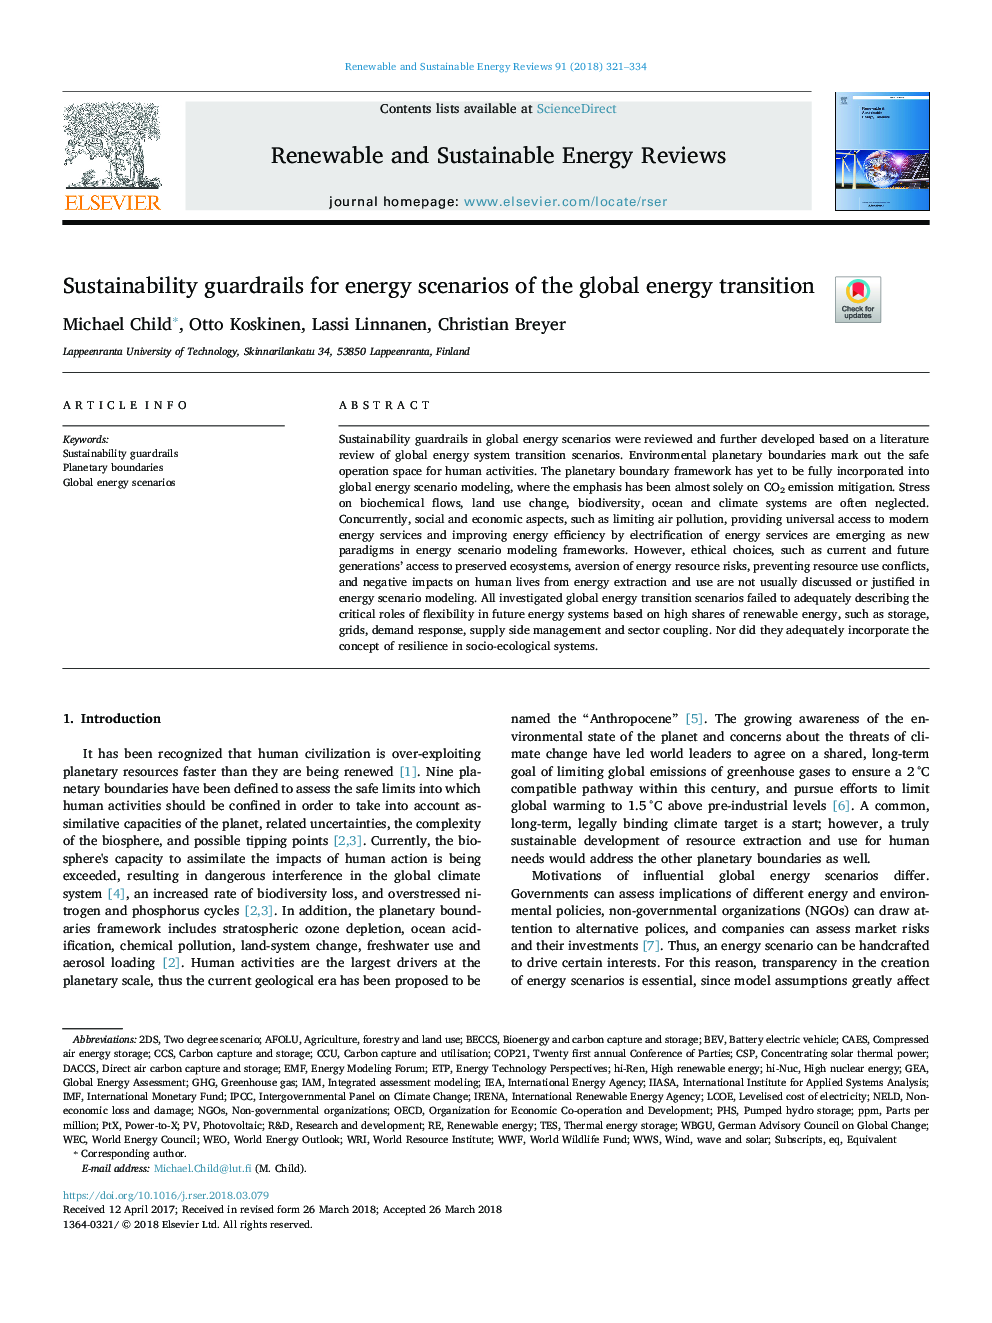 سپرهای پایدار برای سناریوهای انرژی انتقال جهانی انرژی 